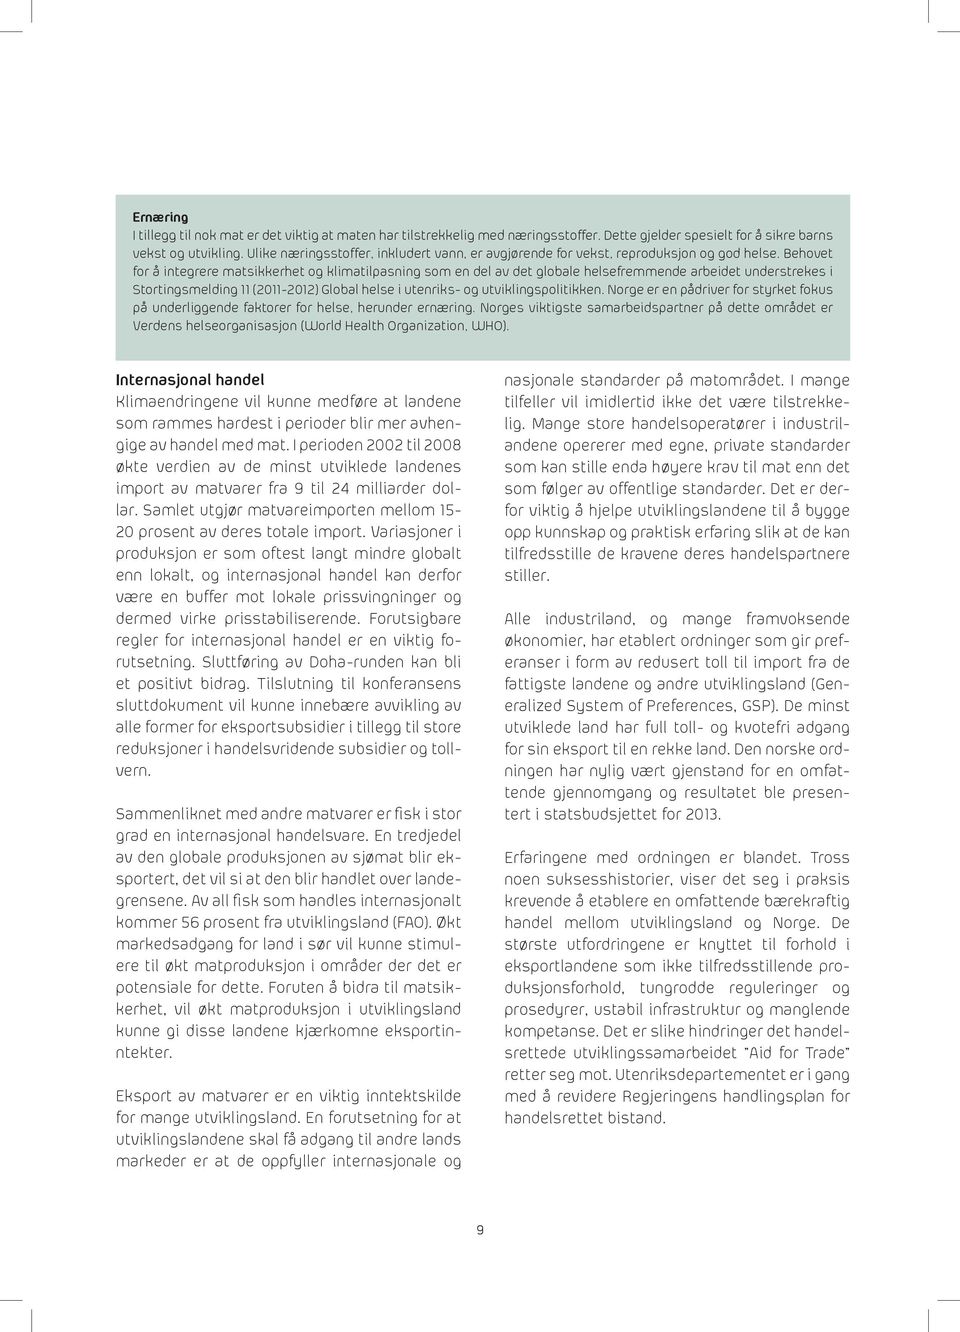 Behovet for å integrere matsikkerhet og klimatilpasning som en del av det globale helsefremmende arbeidet understrekes i Stortingsmelding 11 (2011-2012) Global helse i utenriks- og